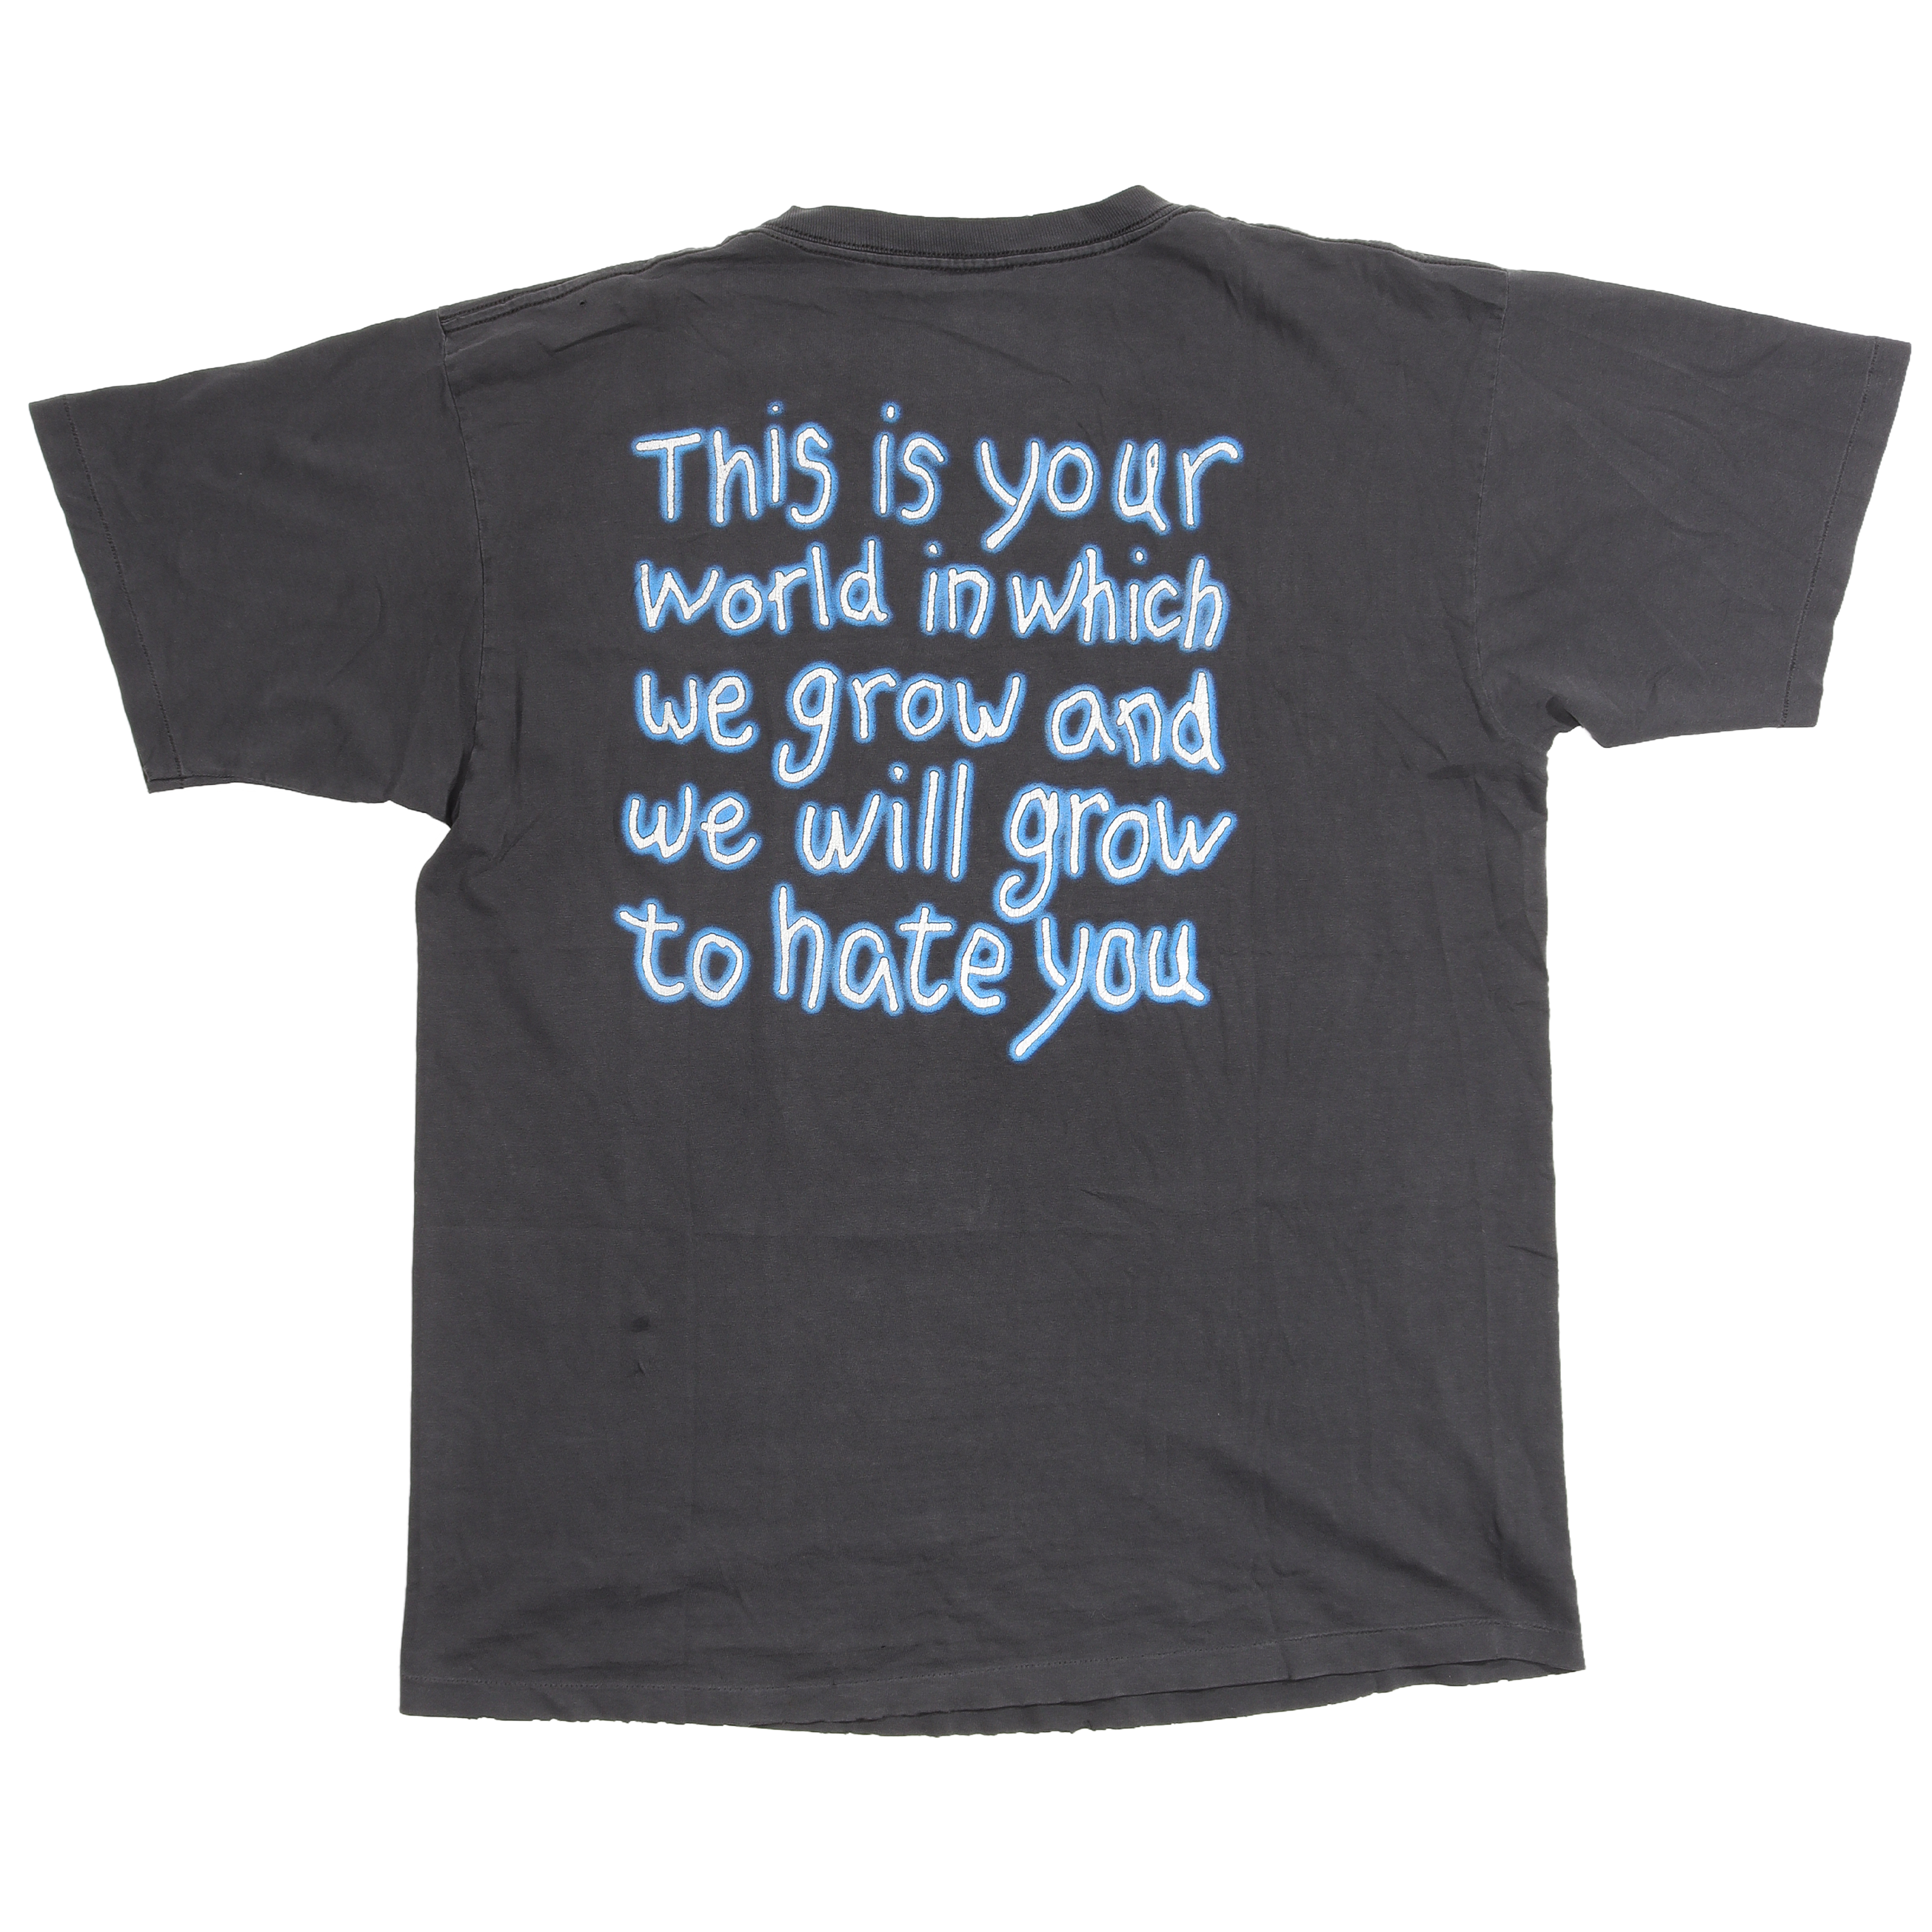 Marilyn Manson 'Blue Face / Get Your Gunn' T-Shirt